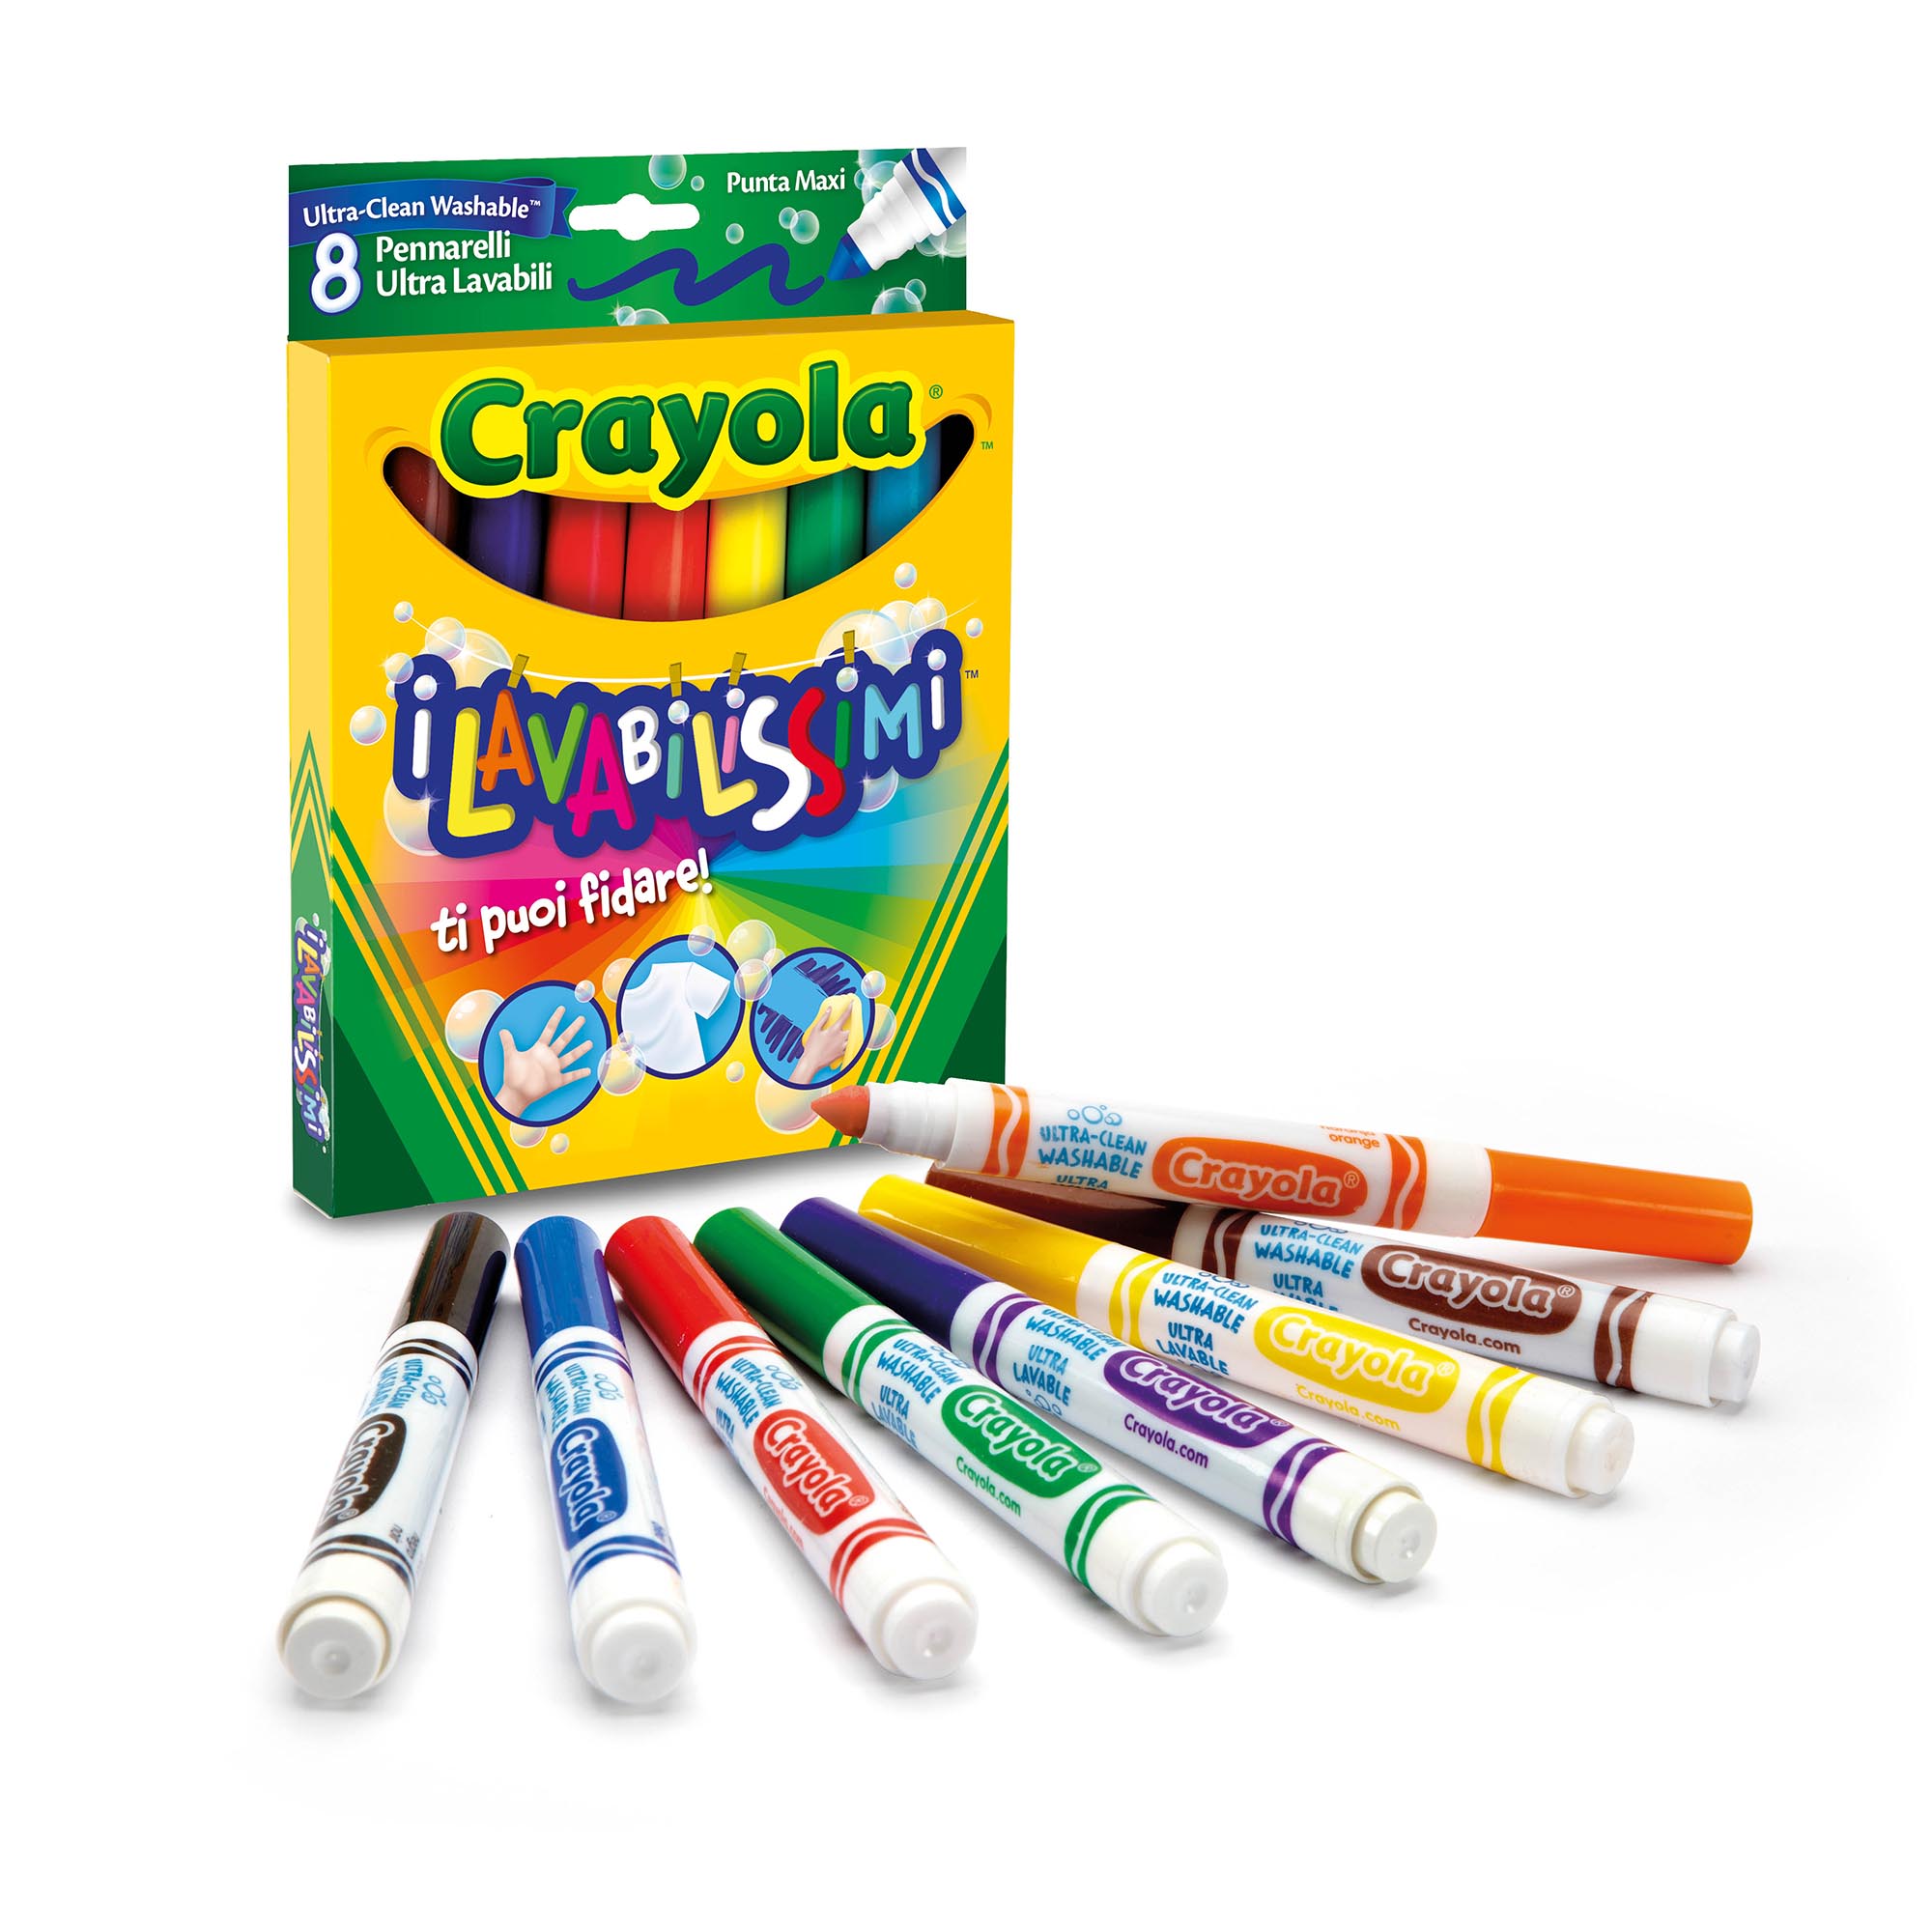 Crayola Crayola-I Lavabilissimi Pennarelli Ultra-Lavabili Punta Maxi Colori Tro 